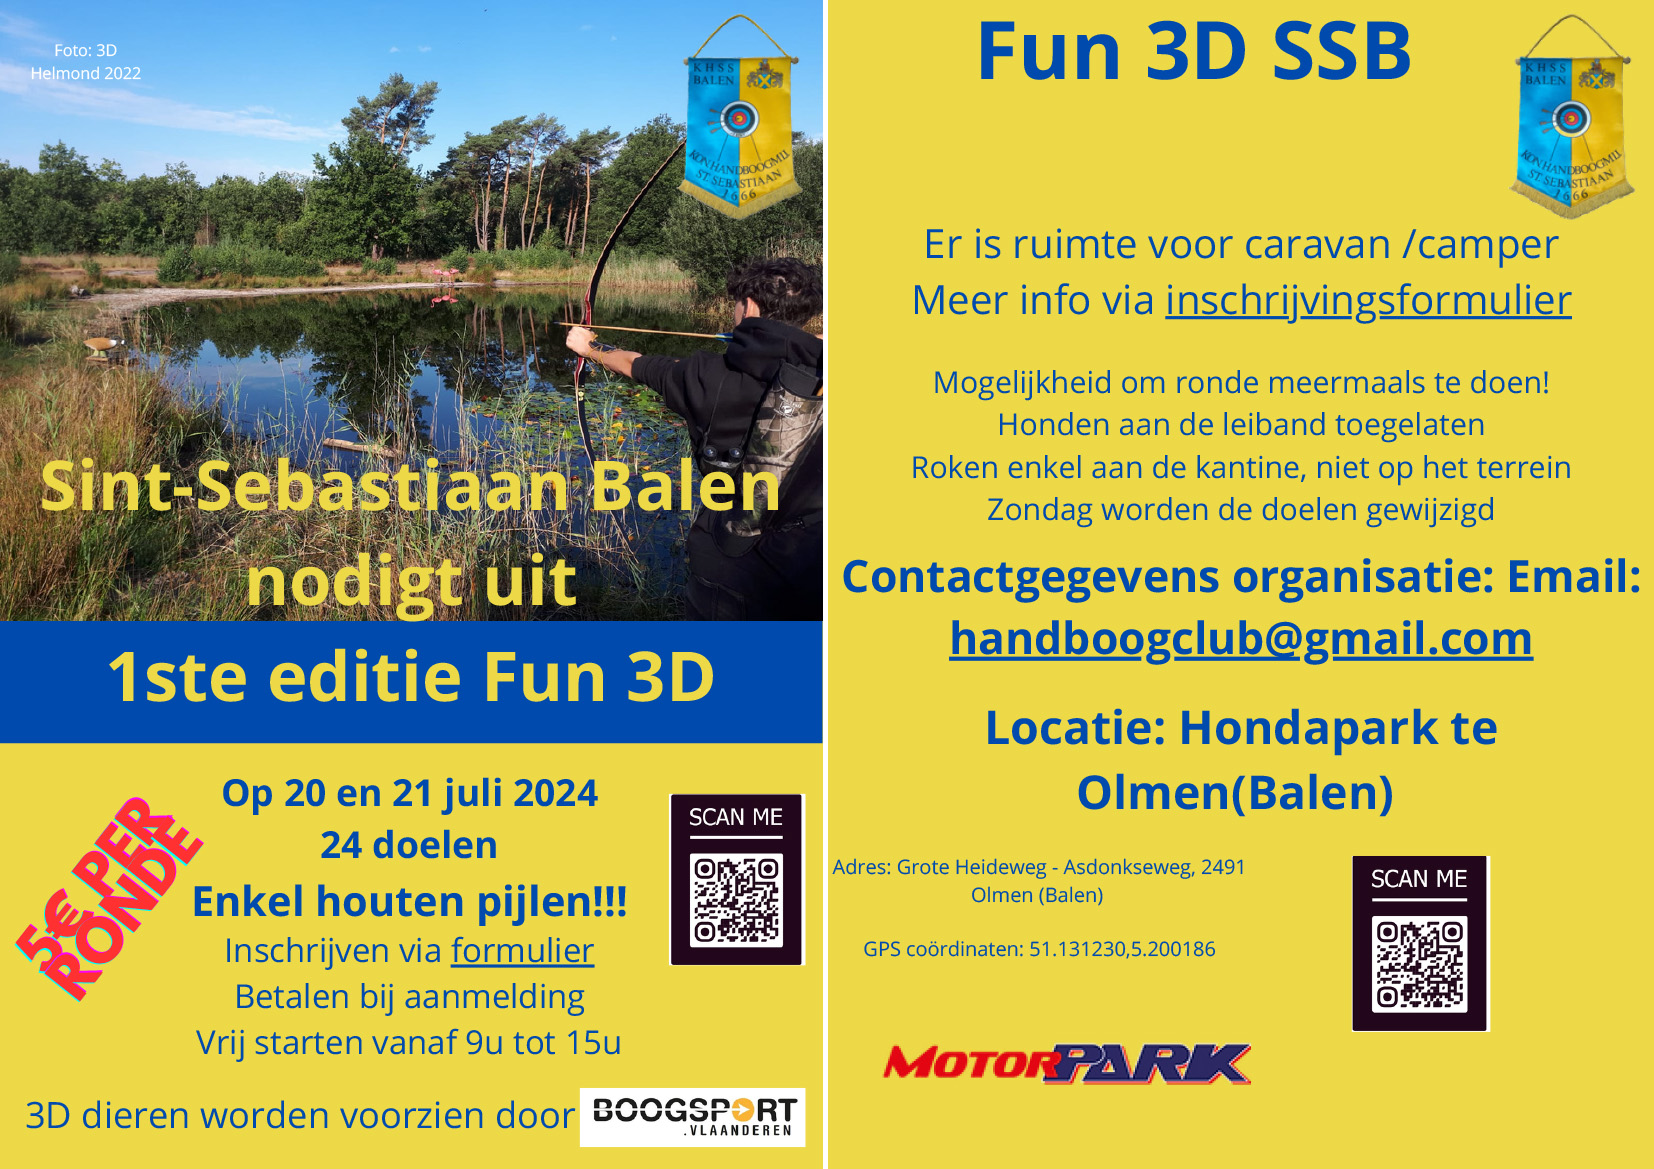 Fun 3D SSB Balen @ Hondapark